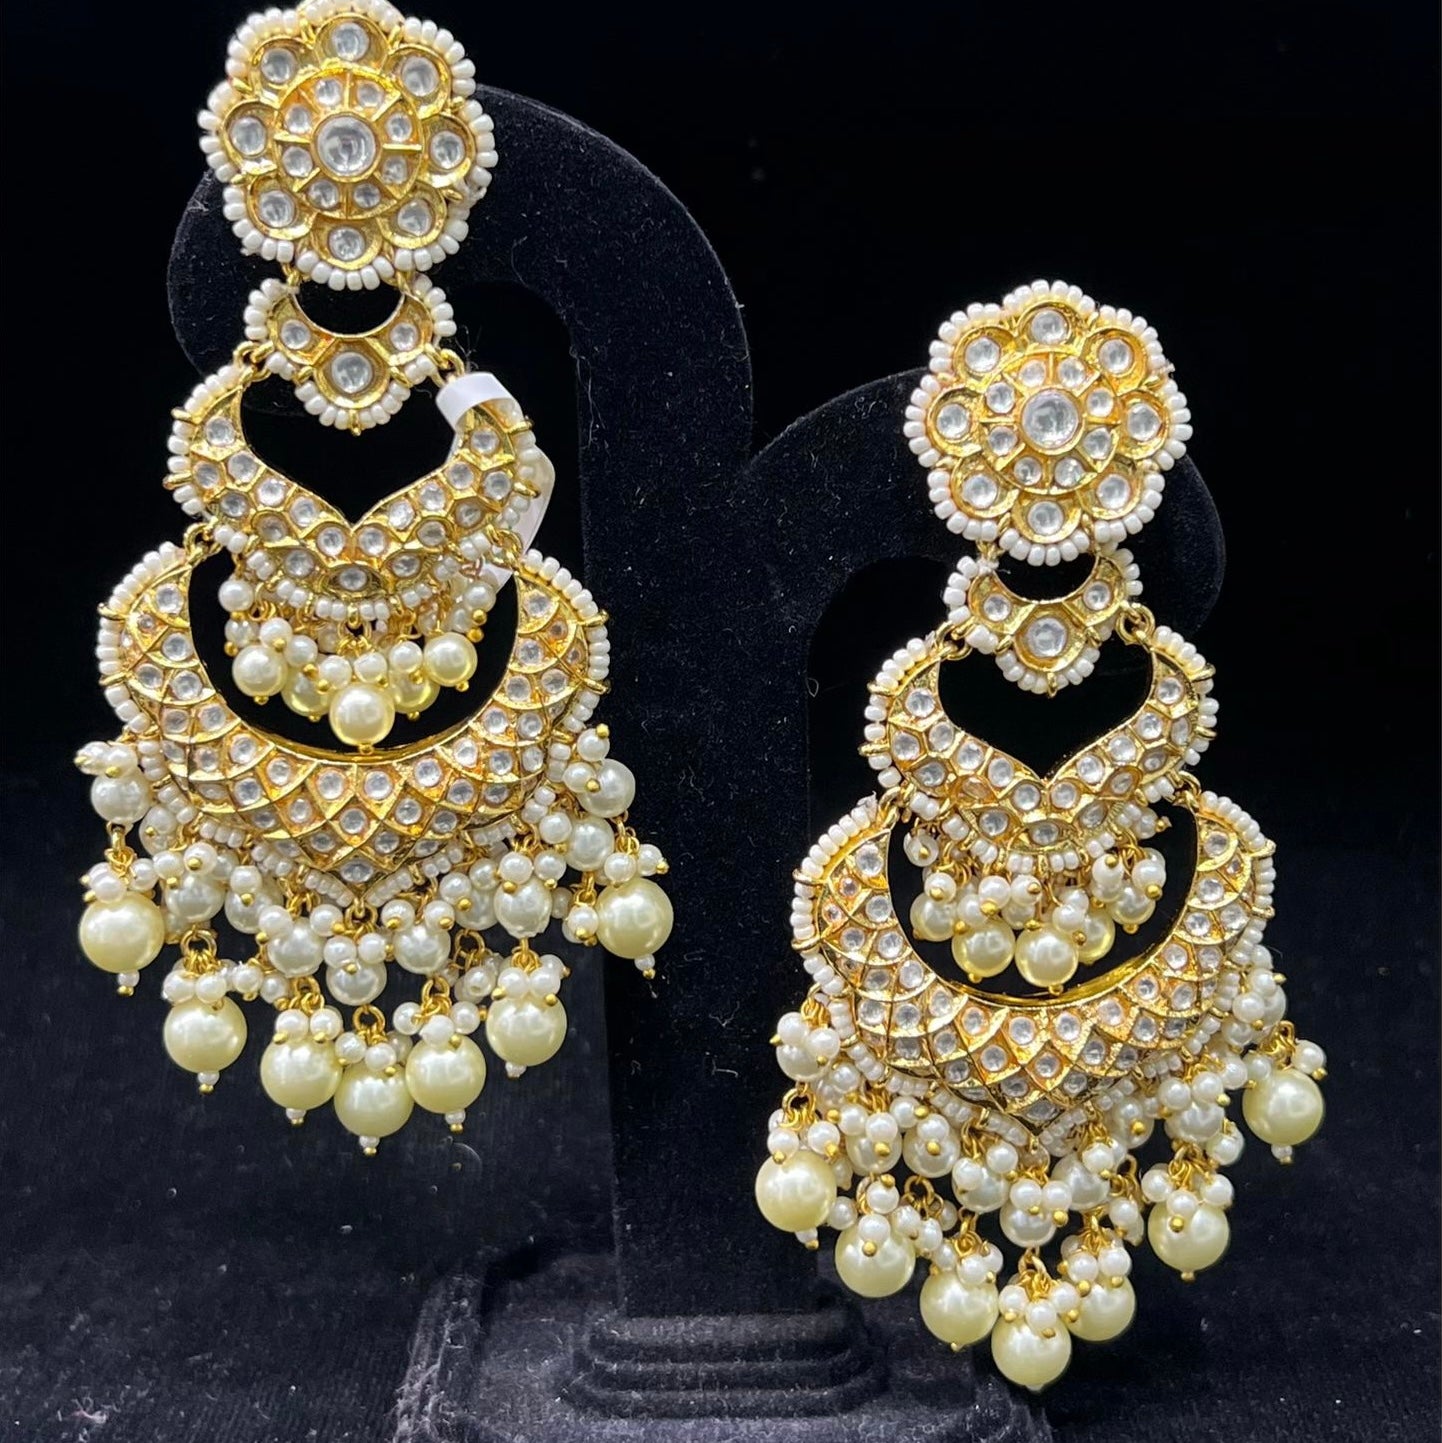 Tanuja beautiful Chandbali earrings